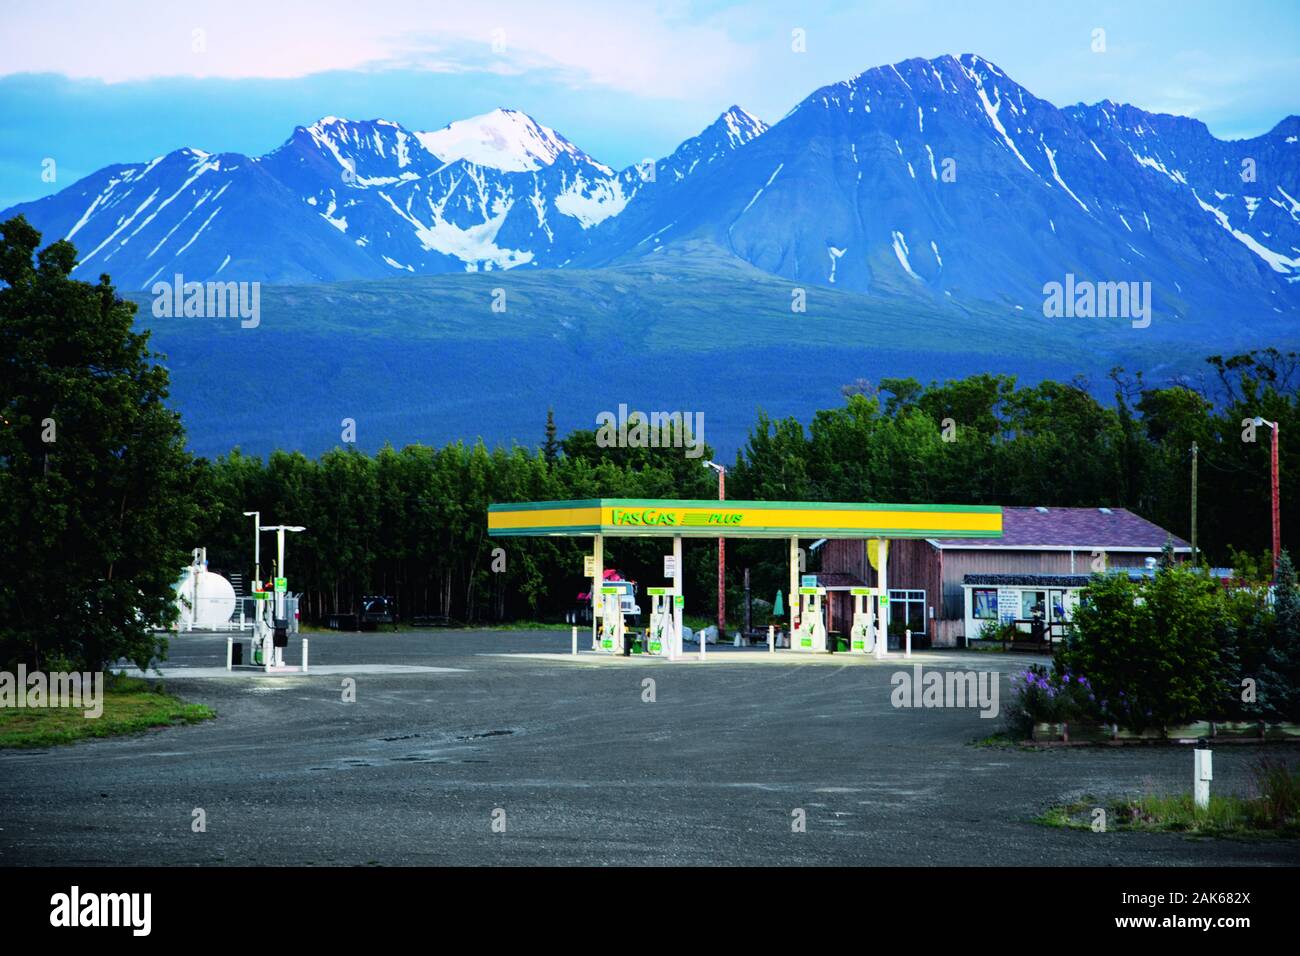 Yukon: Alaska Highway, Tankstelle bei Haines Junction, Kanada Westen | Verwendung weltweit Stockfoto